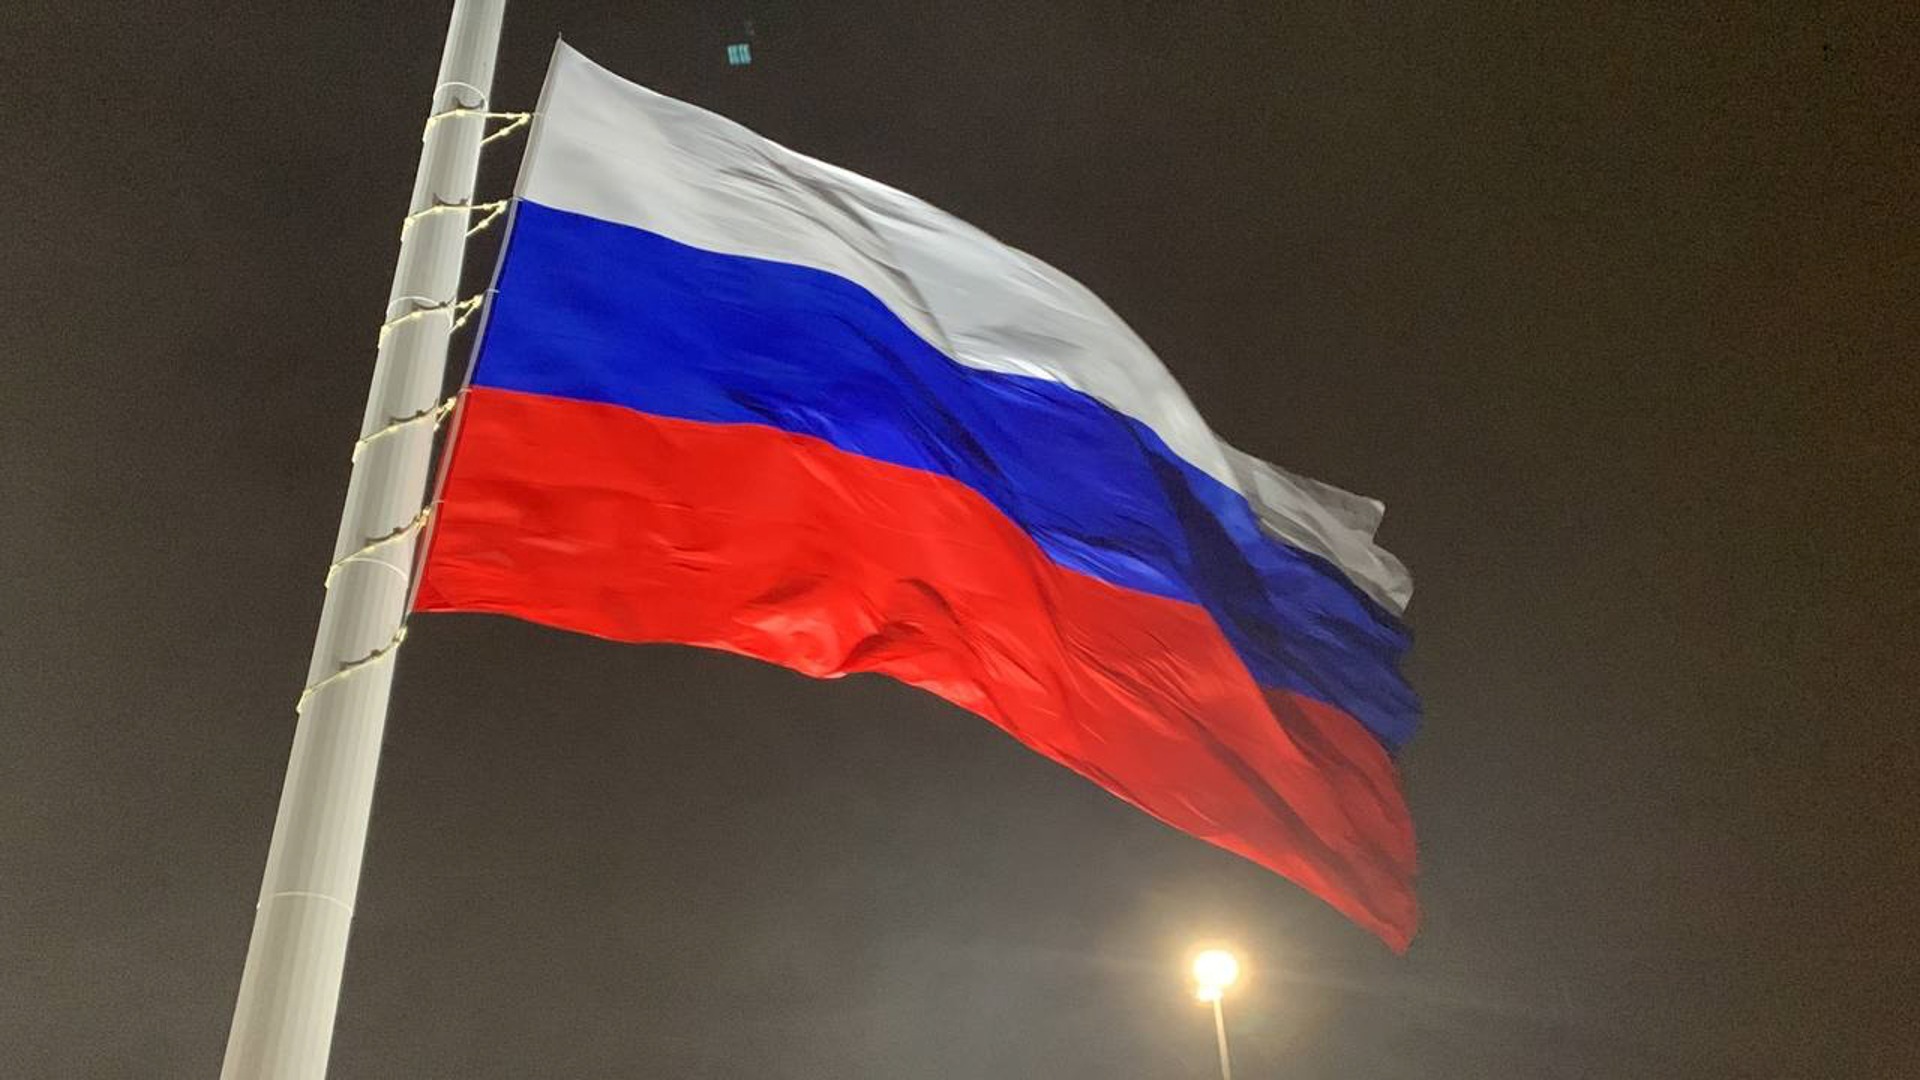 Ко Дню России в Оренбурге раздадут ленты под триколор